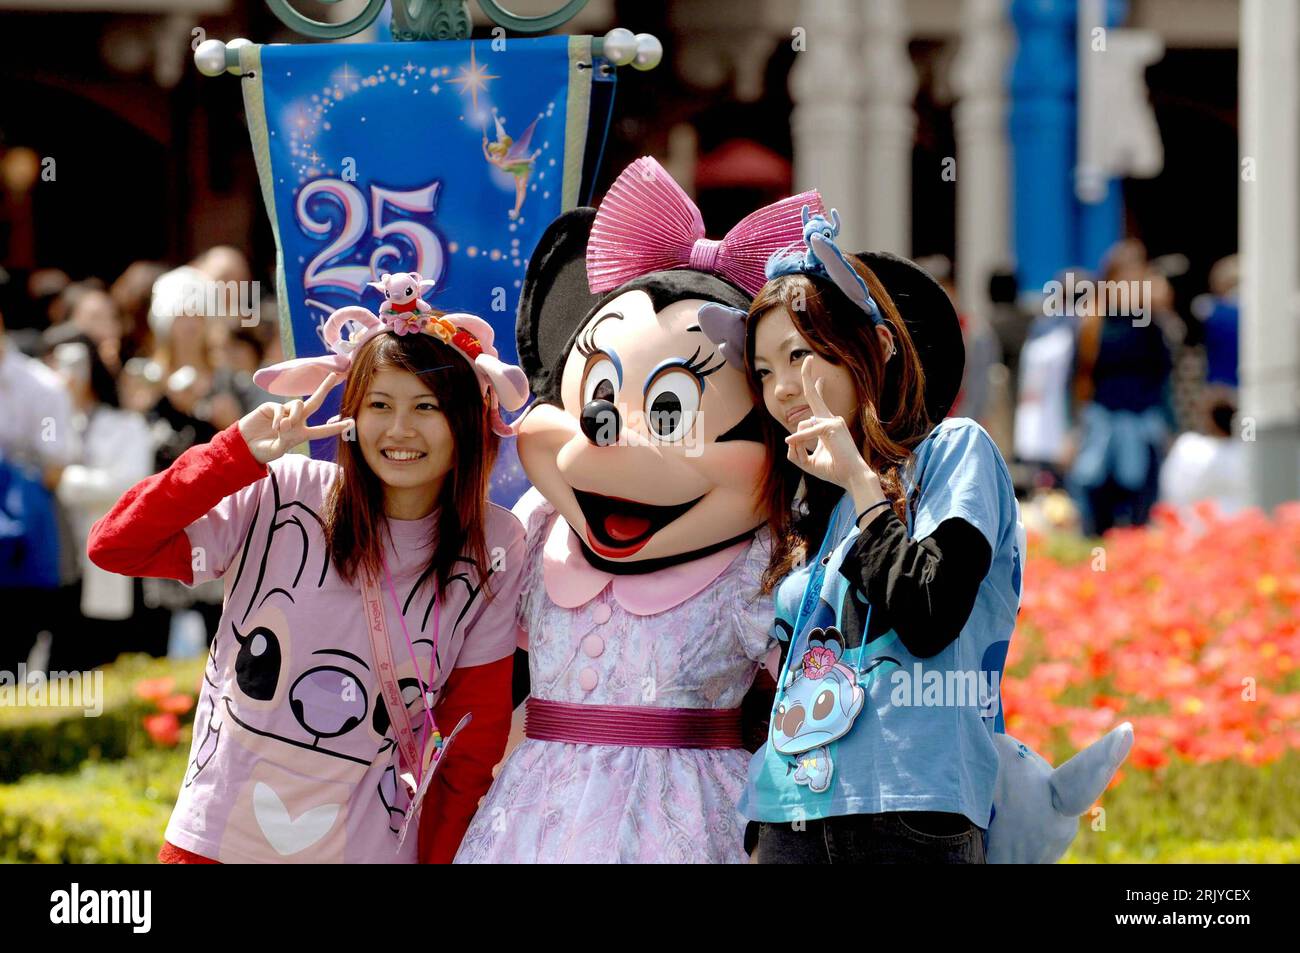 Bildnummer: 52500878  Datum: 15.04.2008  Copyright: imago/Xinhua Besucher lassen sich im Disneyland Urayasu bei Tokyo mit einer Minnie Mouse fotografieren - anlässlich des 25-jährigen Bestehens des Vergnügungsparks - PUBLICATIONxNOTxINxCHN, Personen , optimistisch , premiumd; 2008, Japan, Urayasu, Tokio, Disney, Land, Jubiläum, Freizeitpark, Vergnügungspark, Disneyfigur, Figur, Comic, Comicfigur, Maus, Land, Leute; , quer, Kbdig, Gruppenbild,  , Reisen, Asien Stock Photo